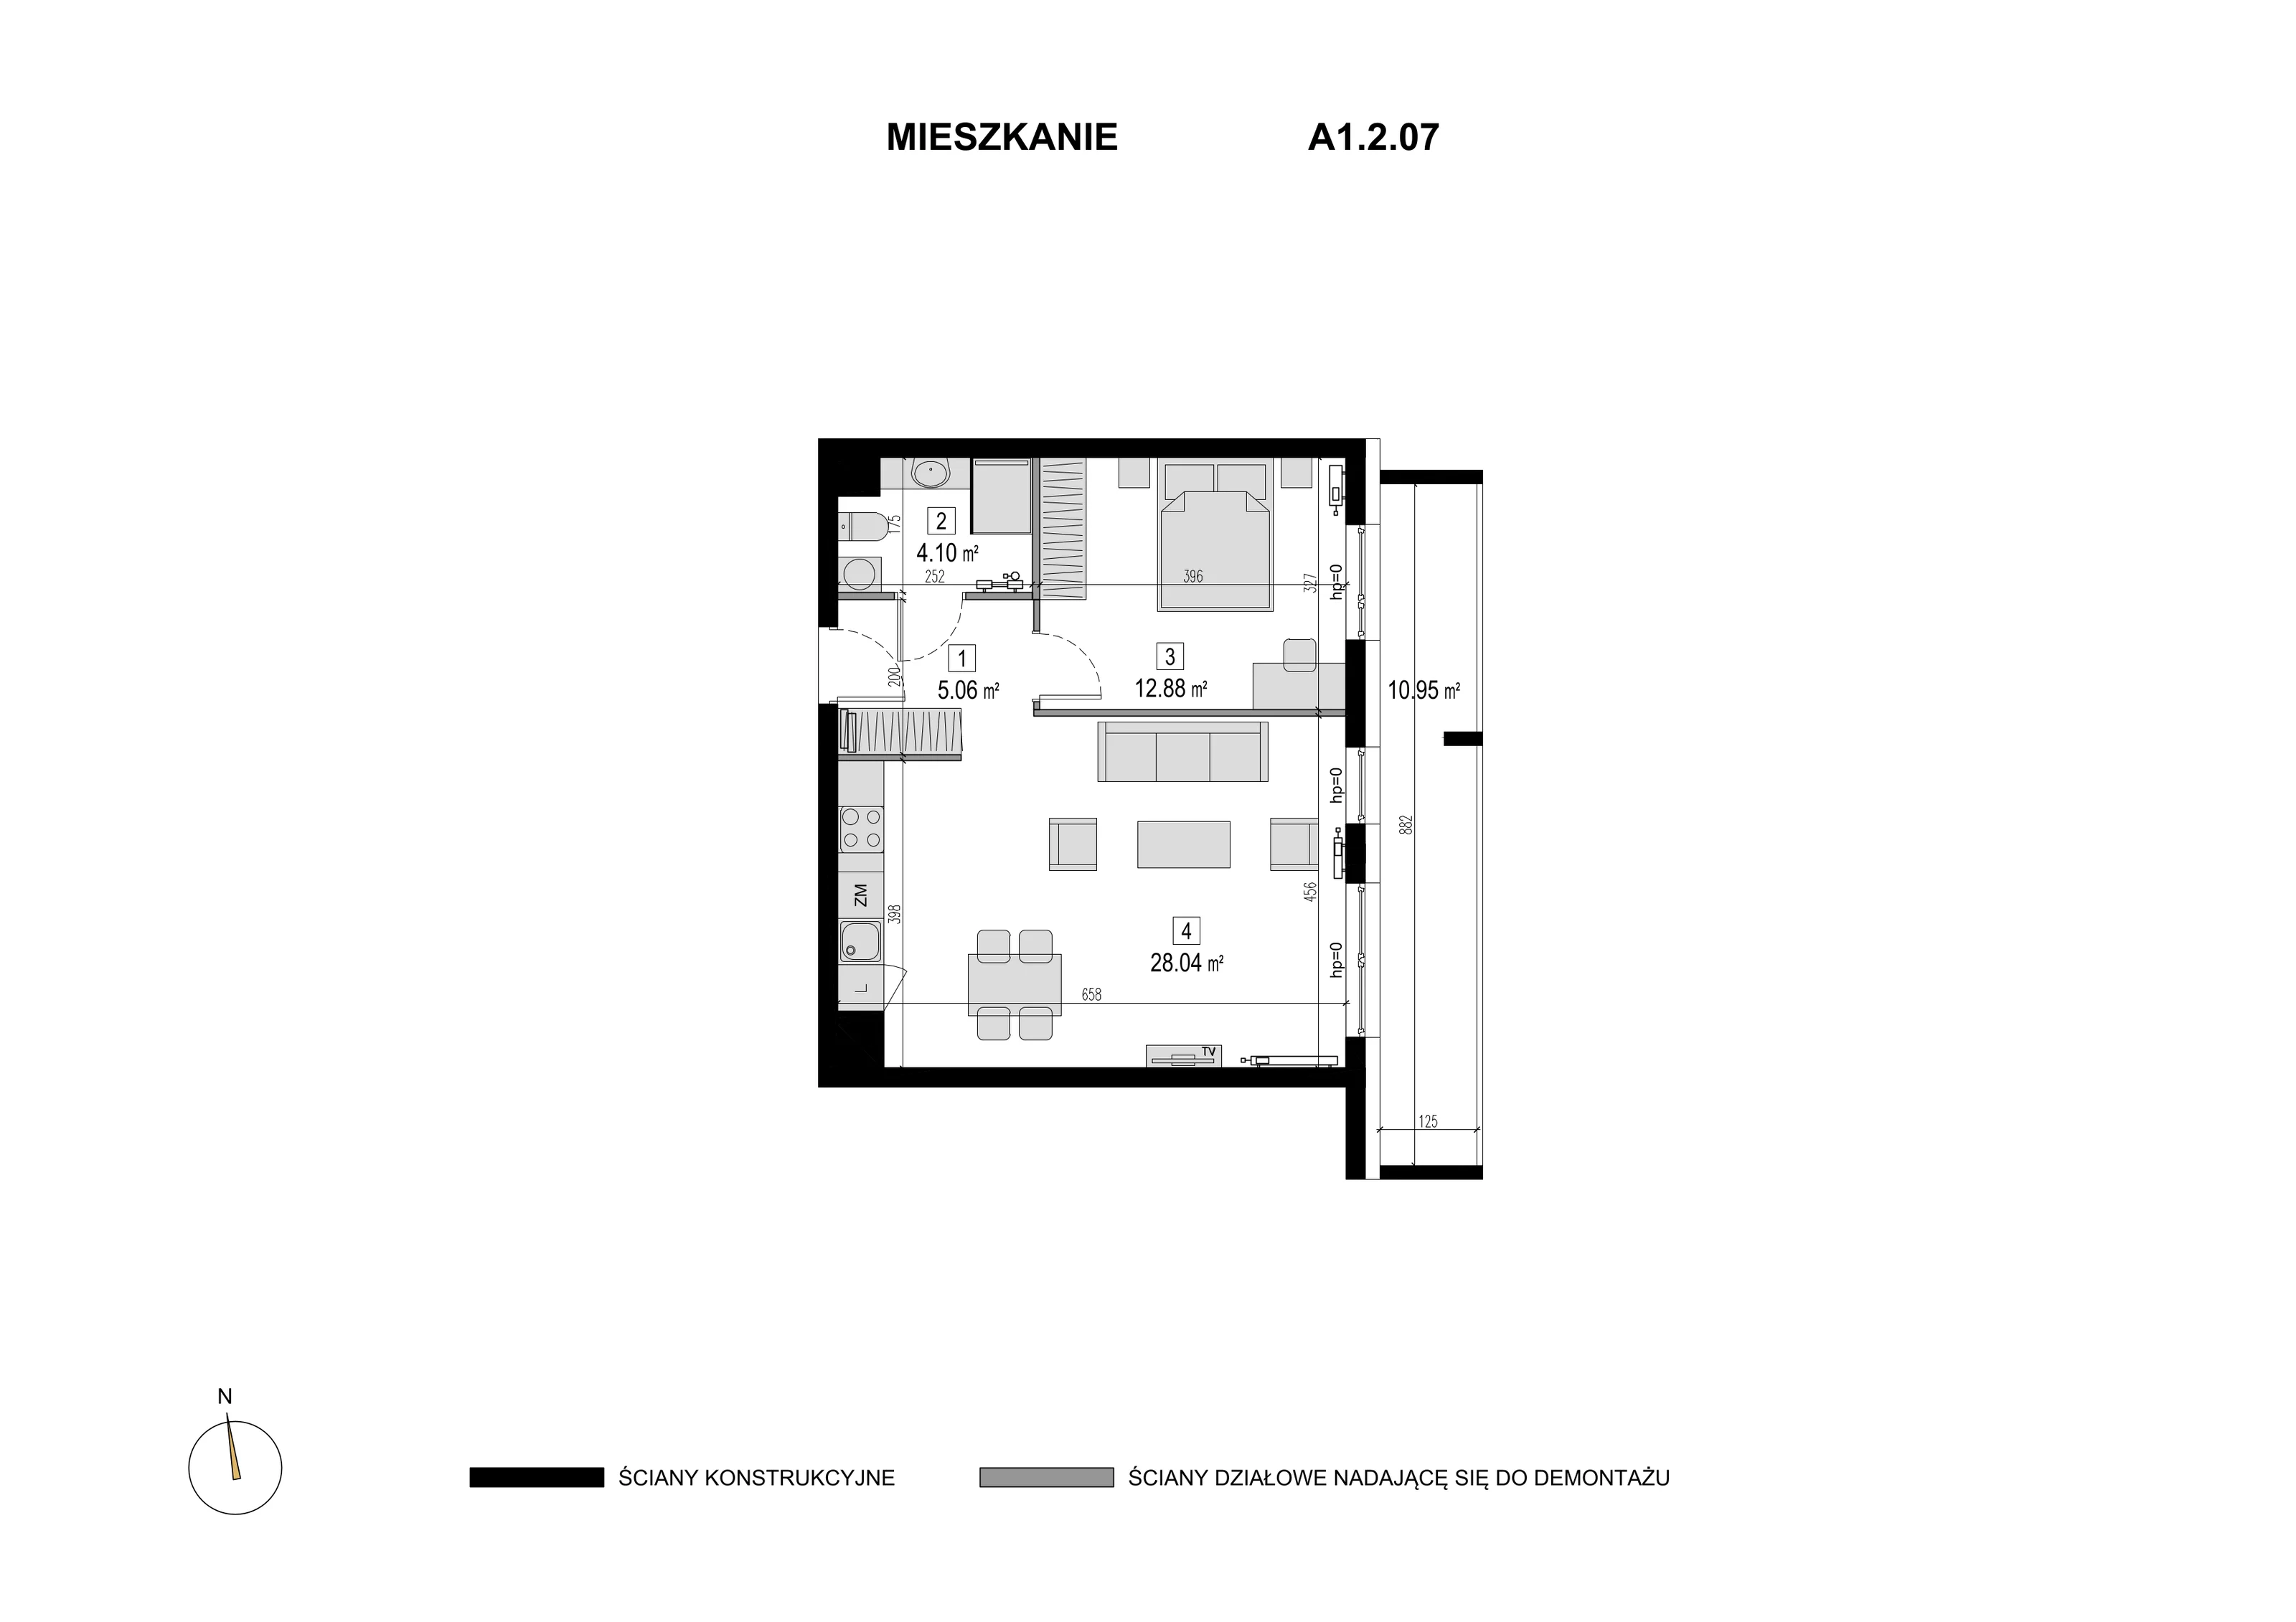 Mieszkanie 50,08 m², piętro 1, oferta nr A1.2.07, Novaforma, Legnica, ul. Chojnowska